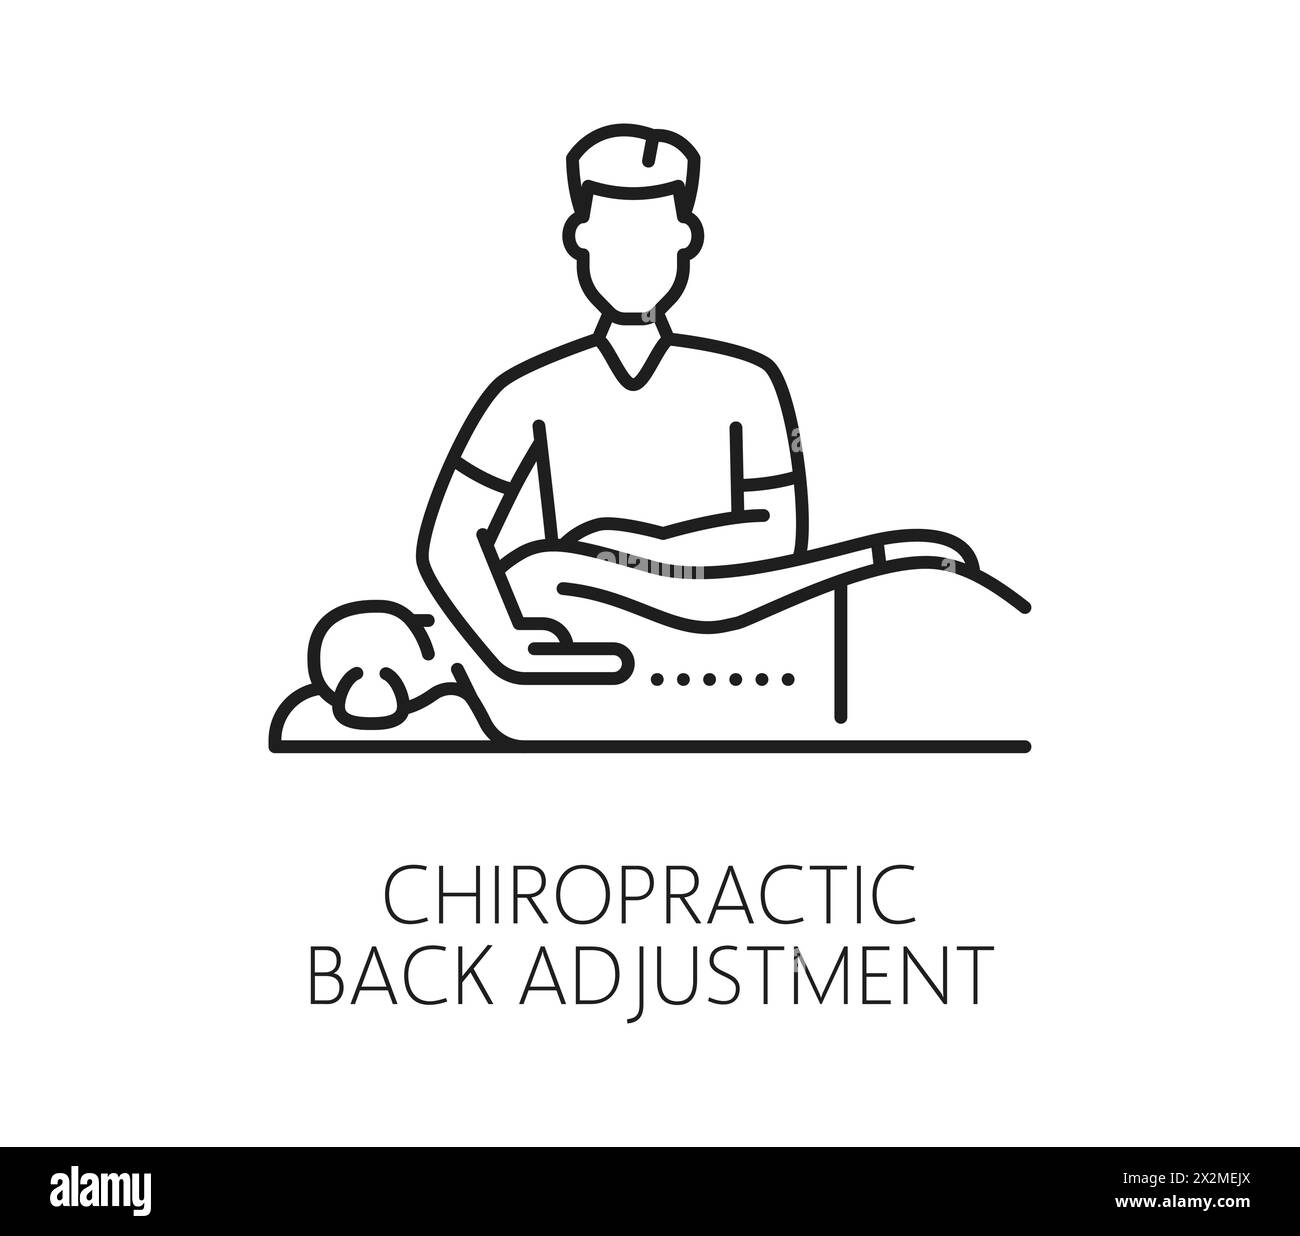 Chiropraktik-Medizin-Liniensymbol für Rückenverstellung oder Wirbelsäulentherapie, Vektorlinien-Piktogramm. Chiropraktisch-medizinische Behandlung und körperorthopädische Physiotherapie-Ikone der schlechten Rückenhaltung Stock Vektor